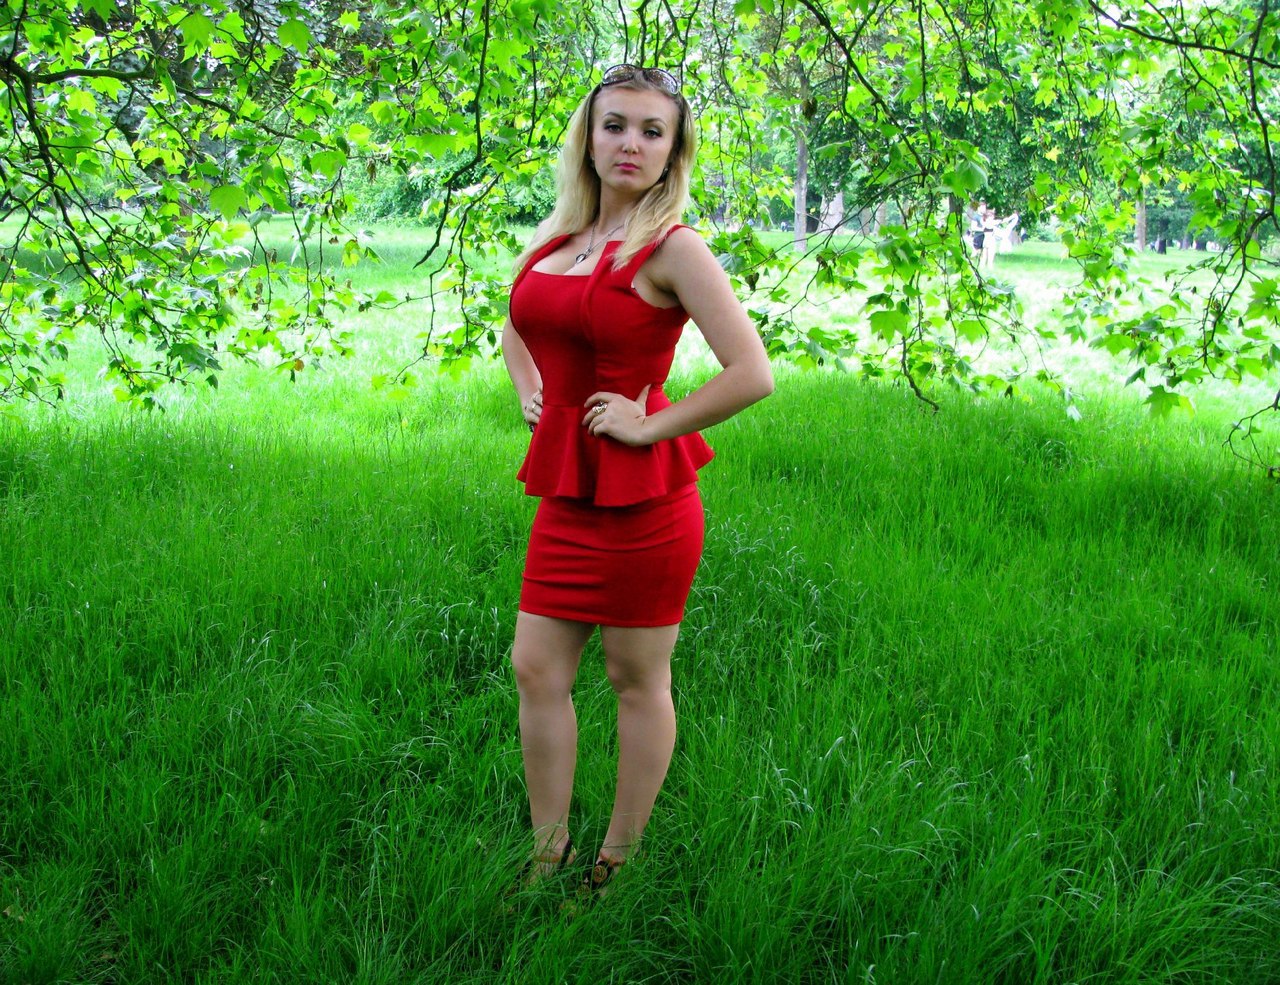 Грудастая девушка из Русской глубинки 15 фото эротики